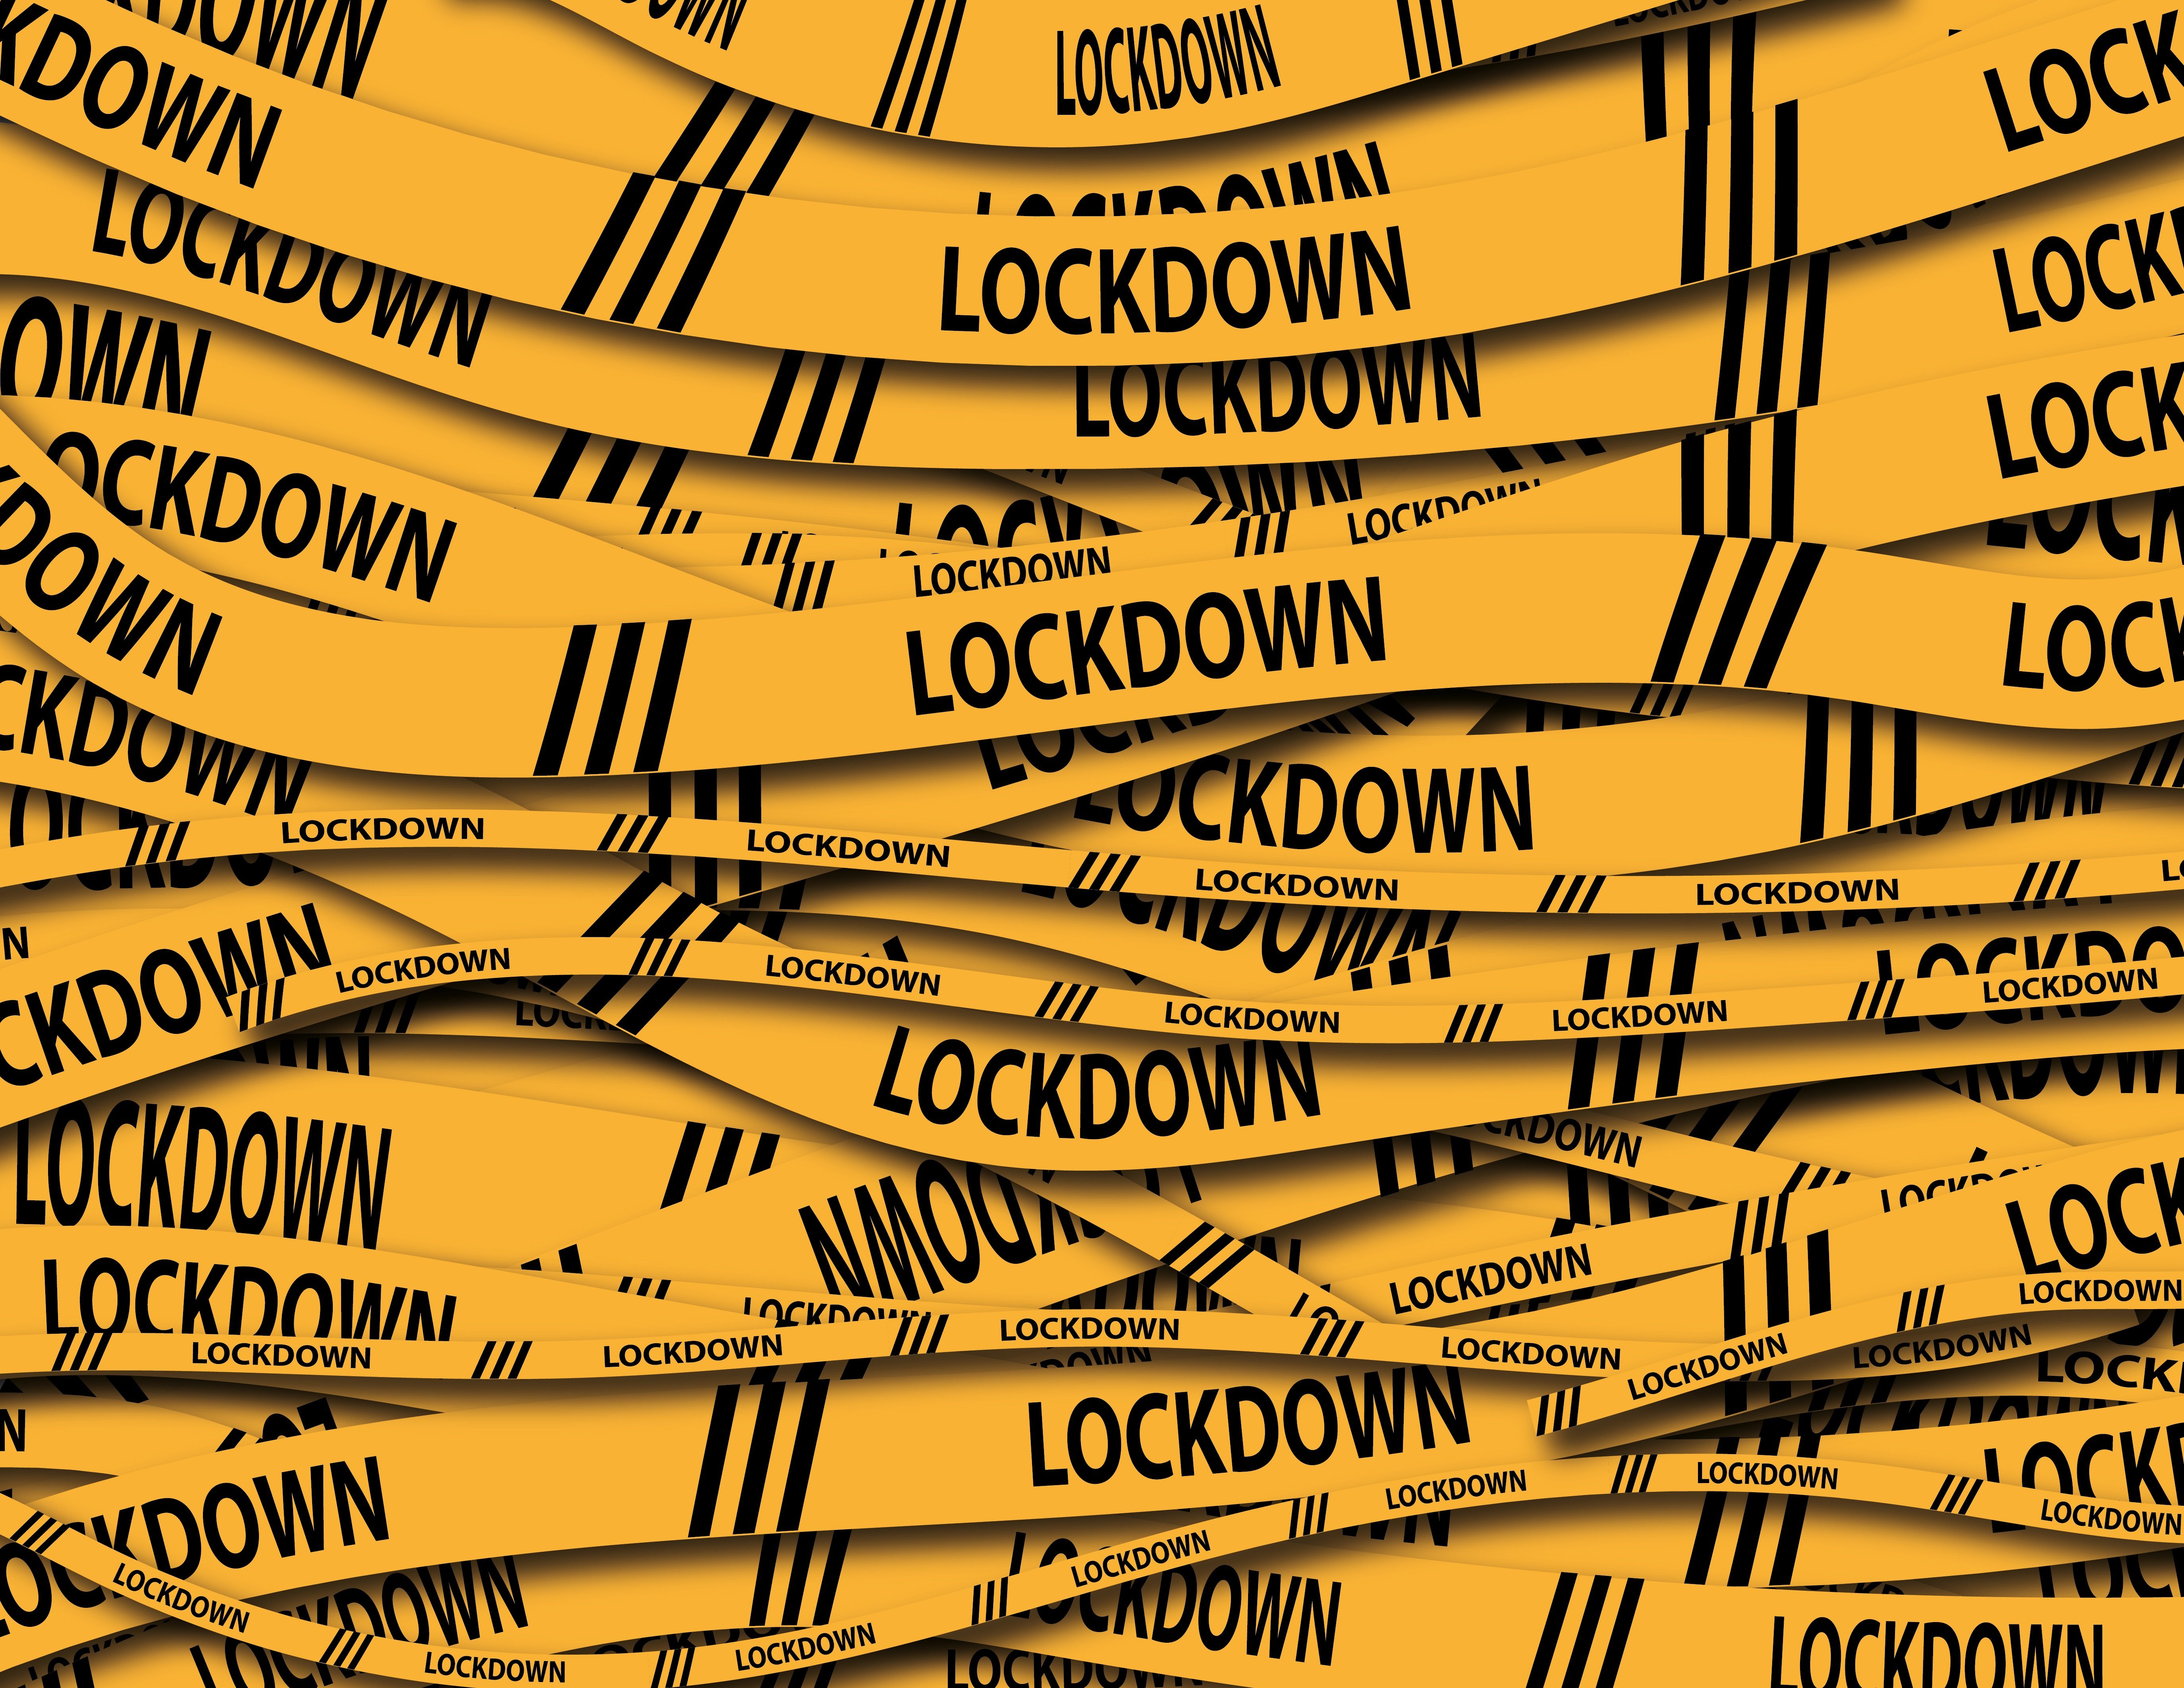 lockdown (Alexandra Koch)